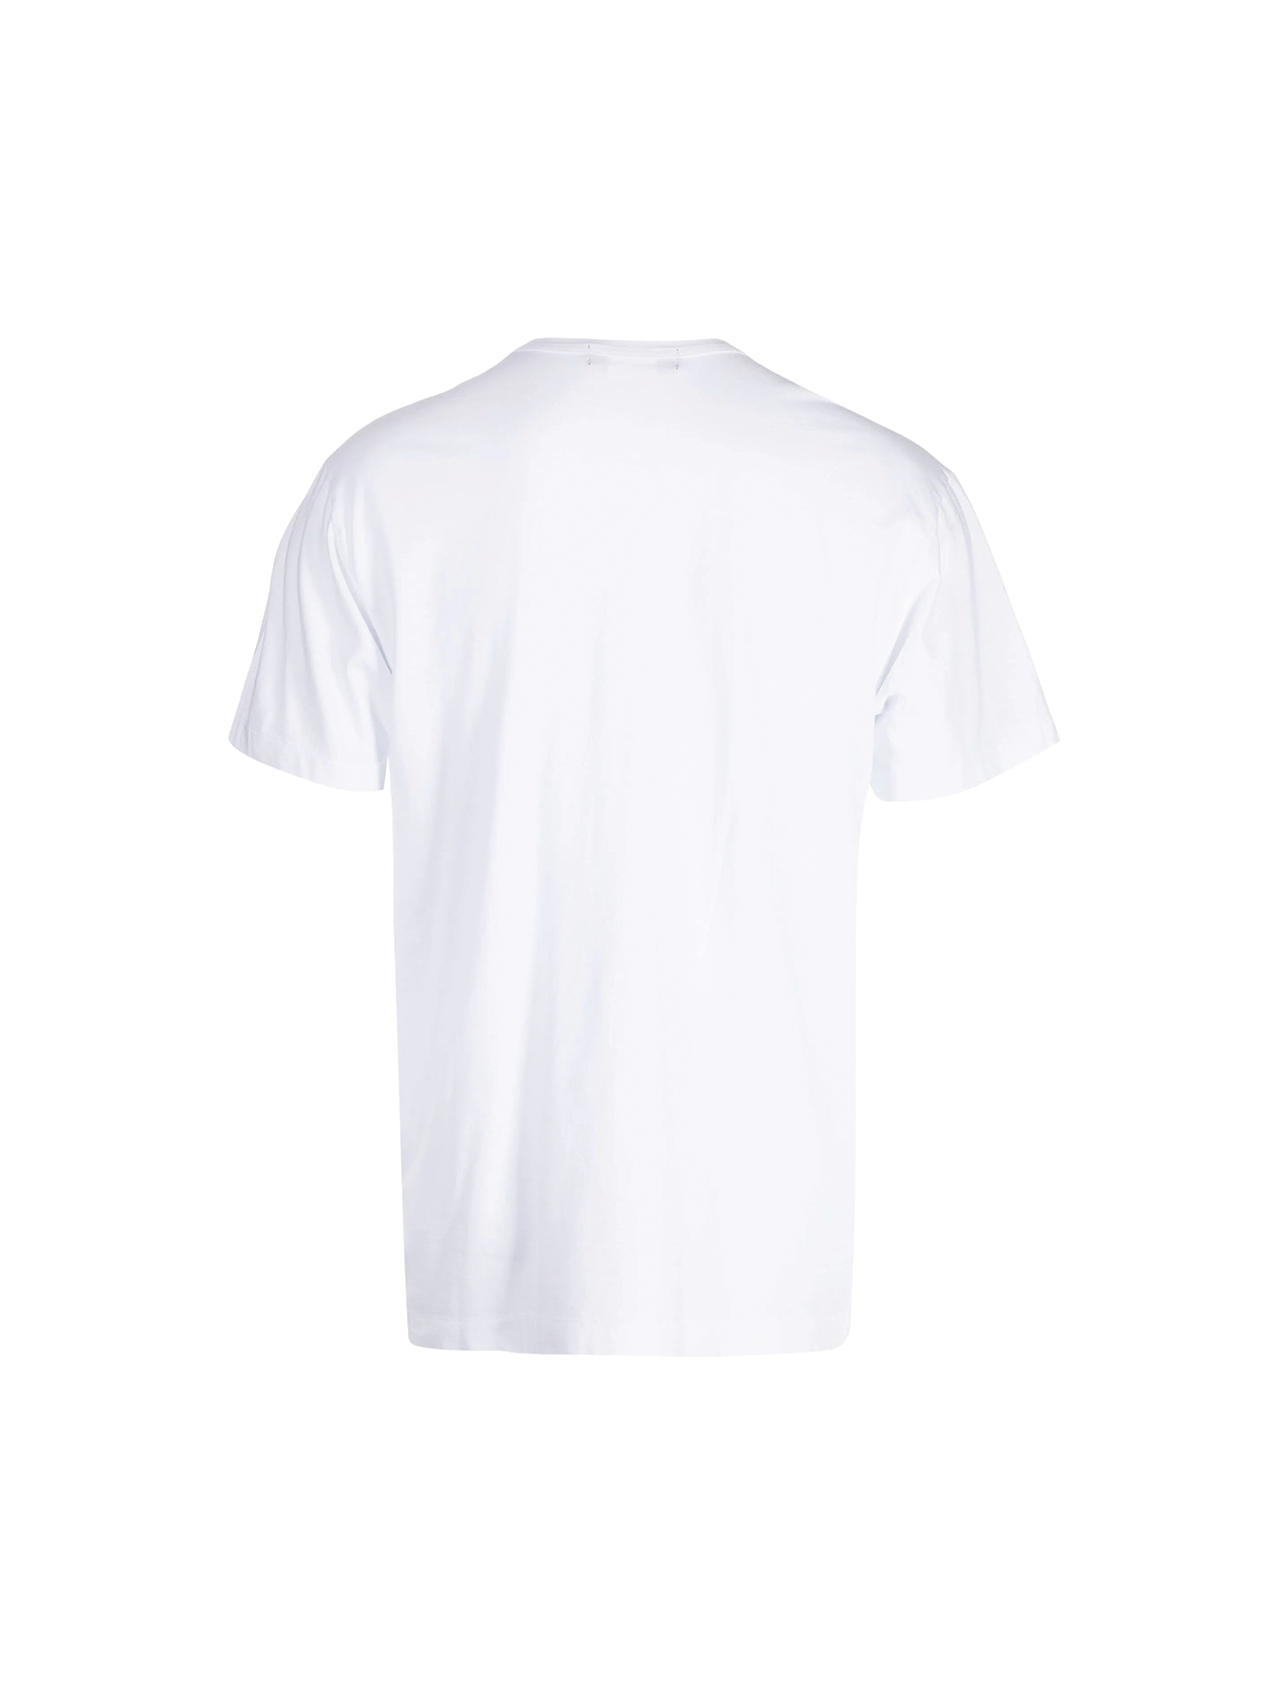 CDG Homme Deux x Sofia Clausse White T-Shirt